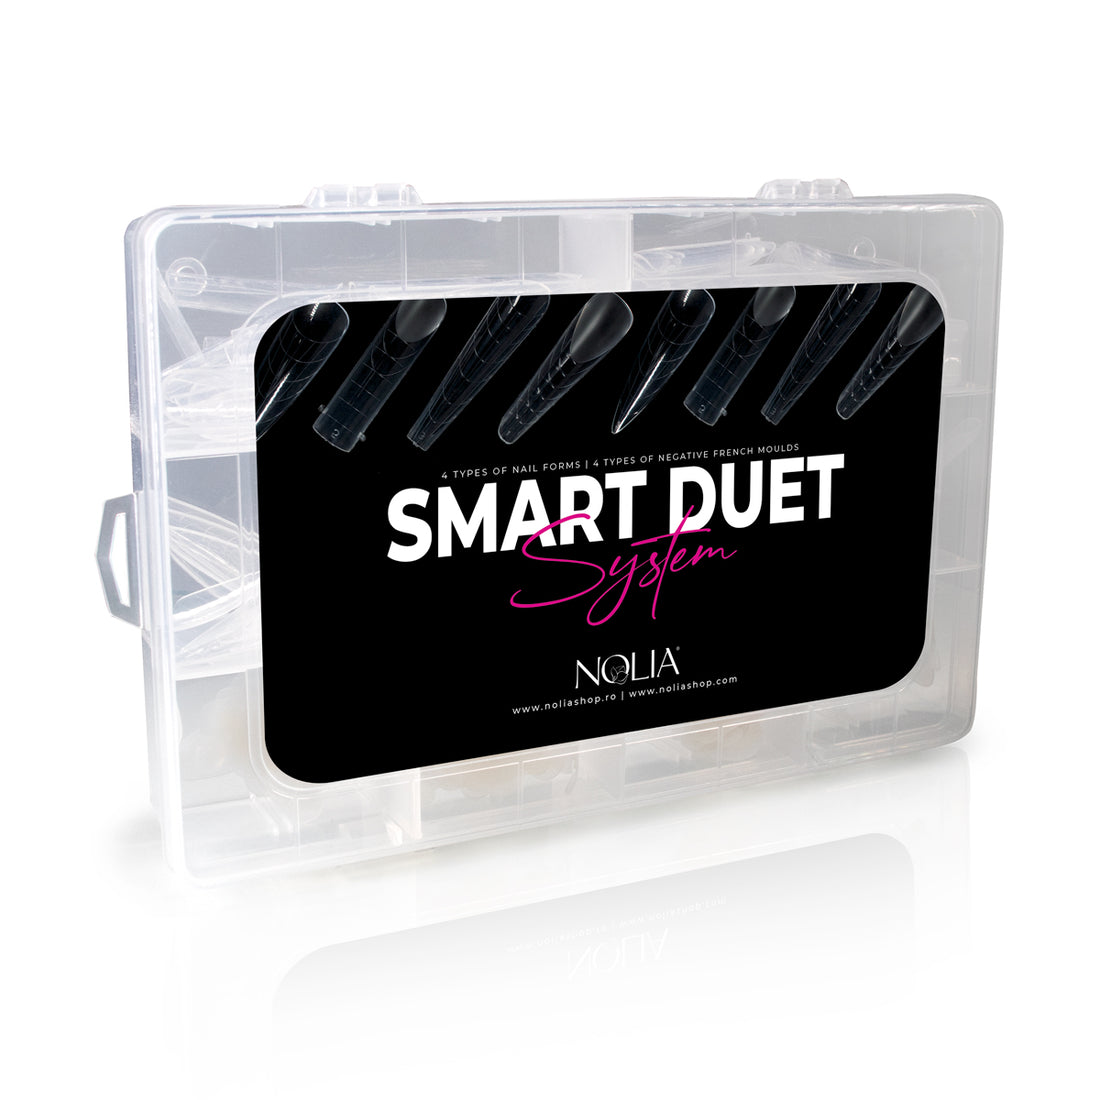 Smart Duet System - Nail Tools - noliashop.com 1